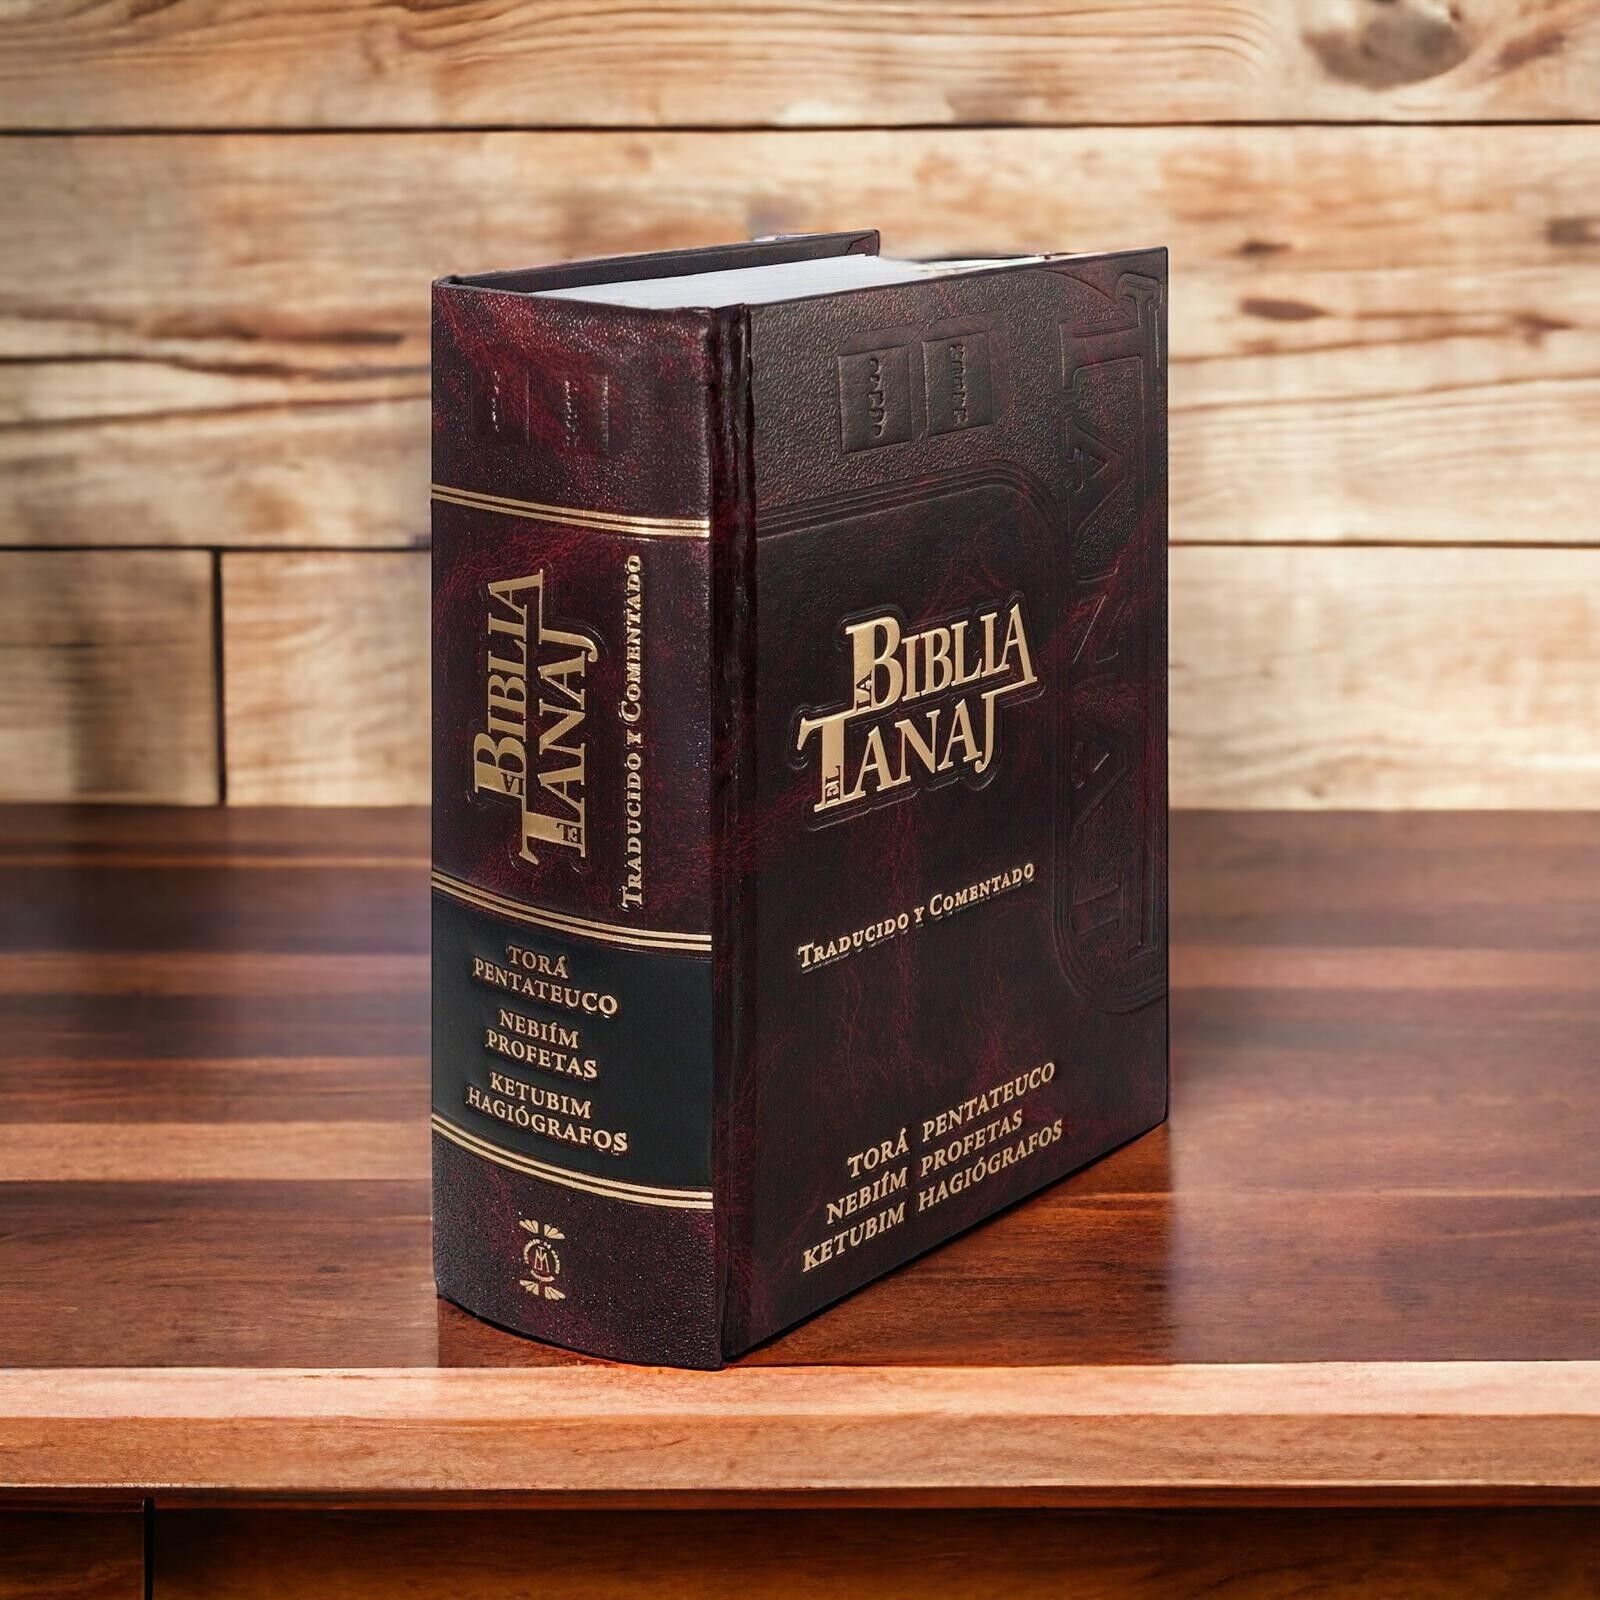 La Biblia Hebrea Completa - Tanaj Judio ( Spanish Edition )